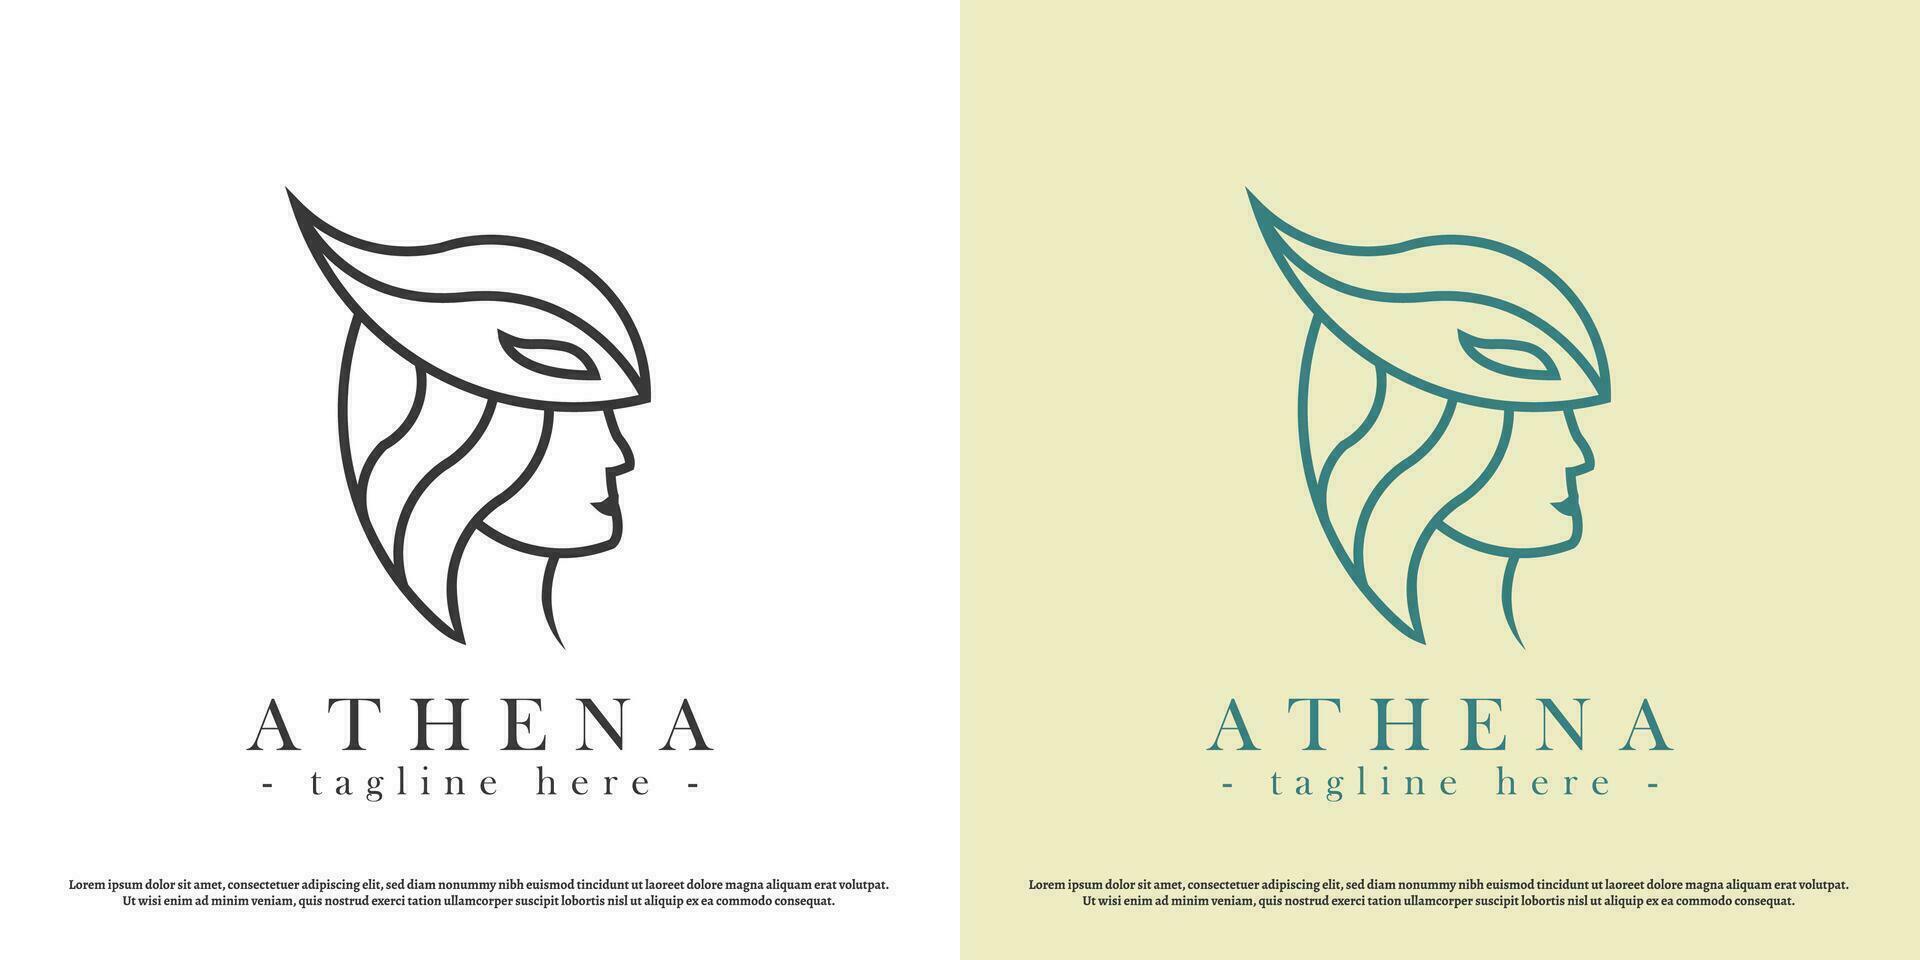 Göttin von Krieg Athena Logo Design Illustration. Silhouette von das Göttin von Krieg Athena Helm jung Frau Vorfahr uralt griechisch römisch Geschichte mutig. einfach minimalistisch Jahrgang Luxus elegant. vektor